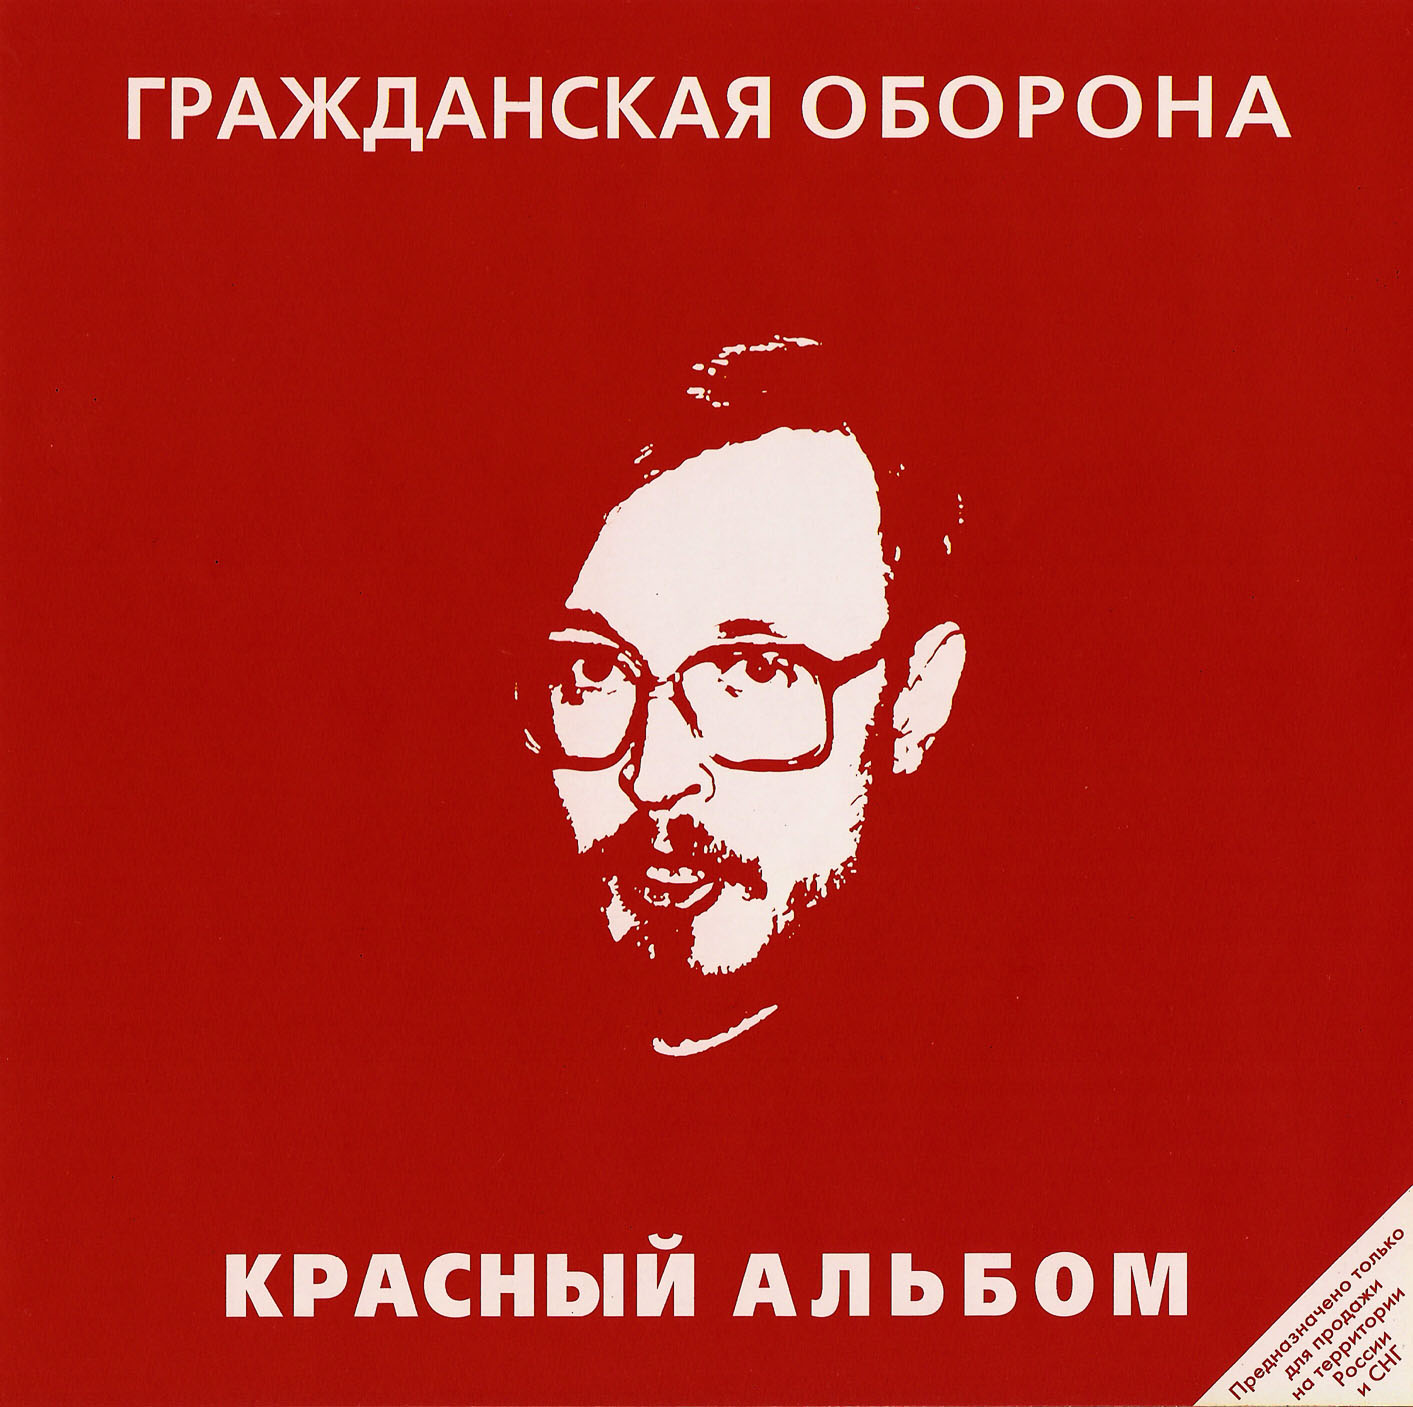 Красный альбом обложка. Гражданская оборона красный альбом 1987.